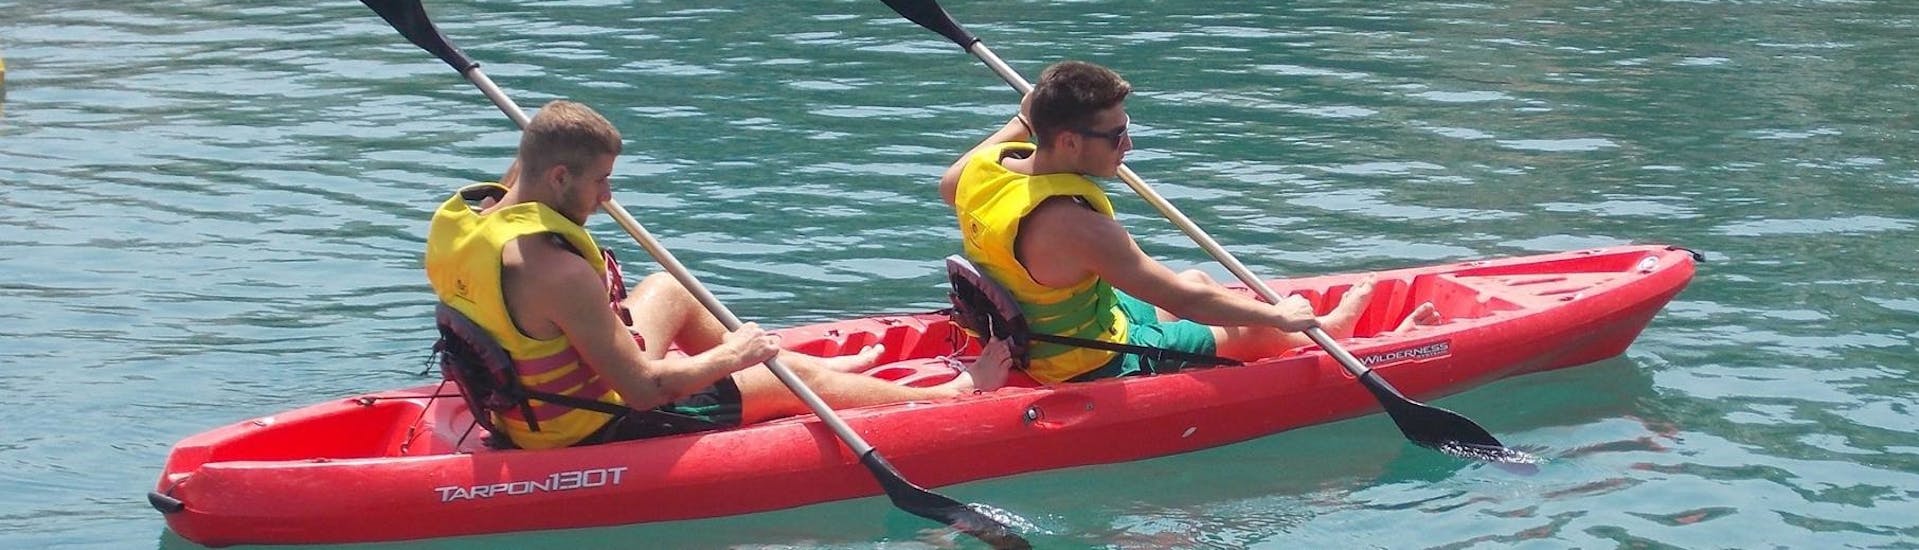 Zwei Personen paddeln gemeinsam auf dem Kanu während dem Kanuverleih in Bali auf Kreta mit The Skippers - Boats & Water Sports Bali